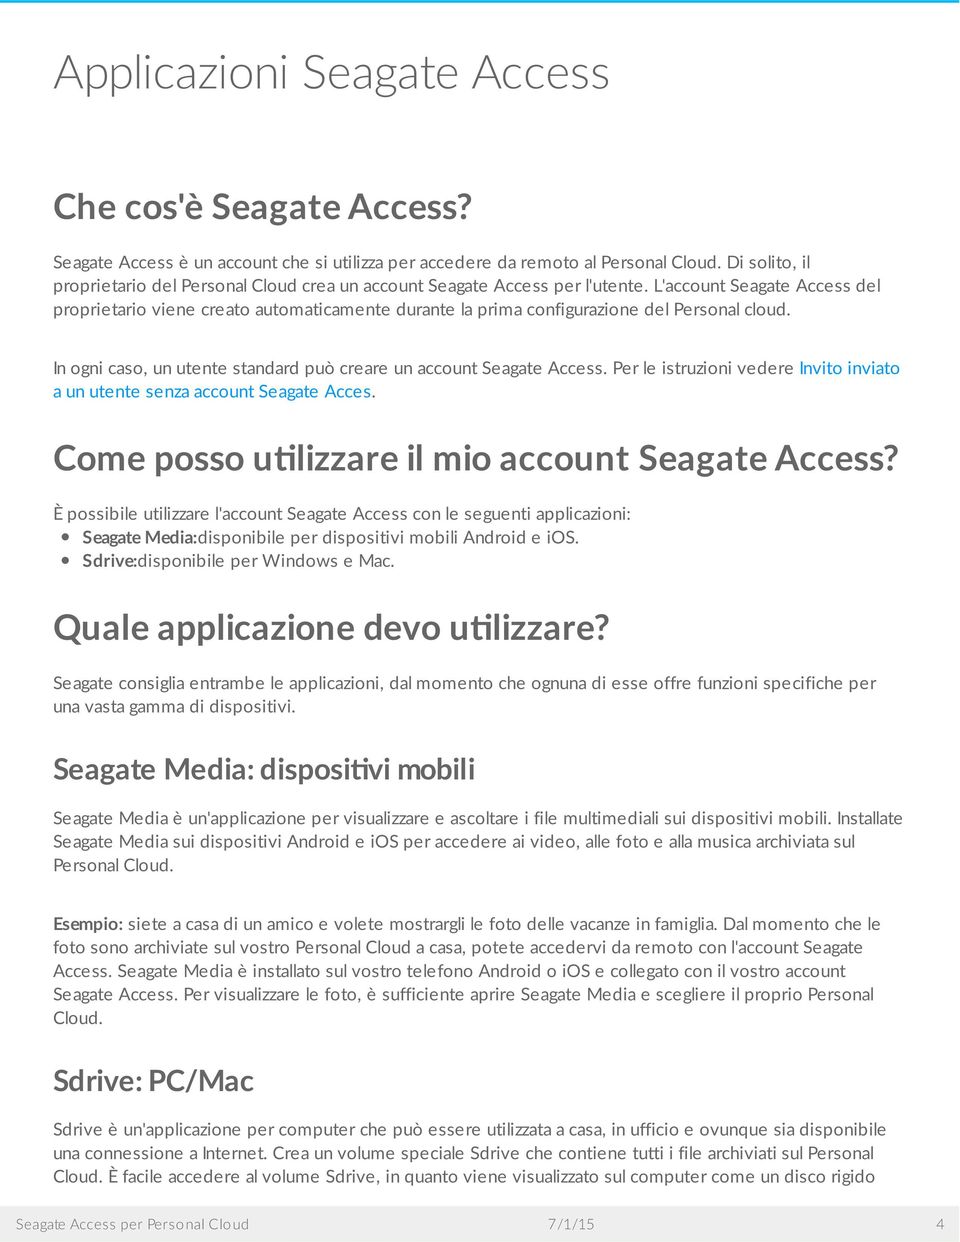 L'account Seagate Access del proprietario viene creato automaticamente durante la prima configurazione del Personal cloud. In ogni caso, un utente standard può creare un account Seagate Access.